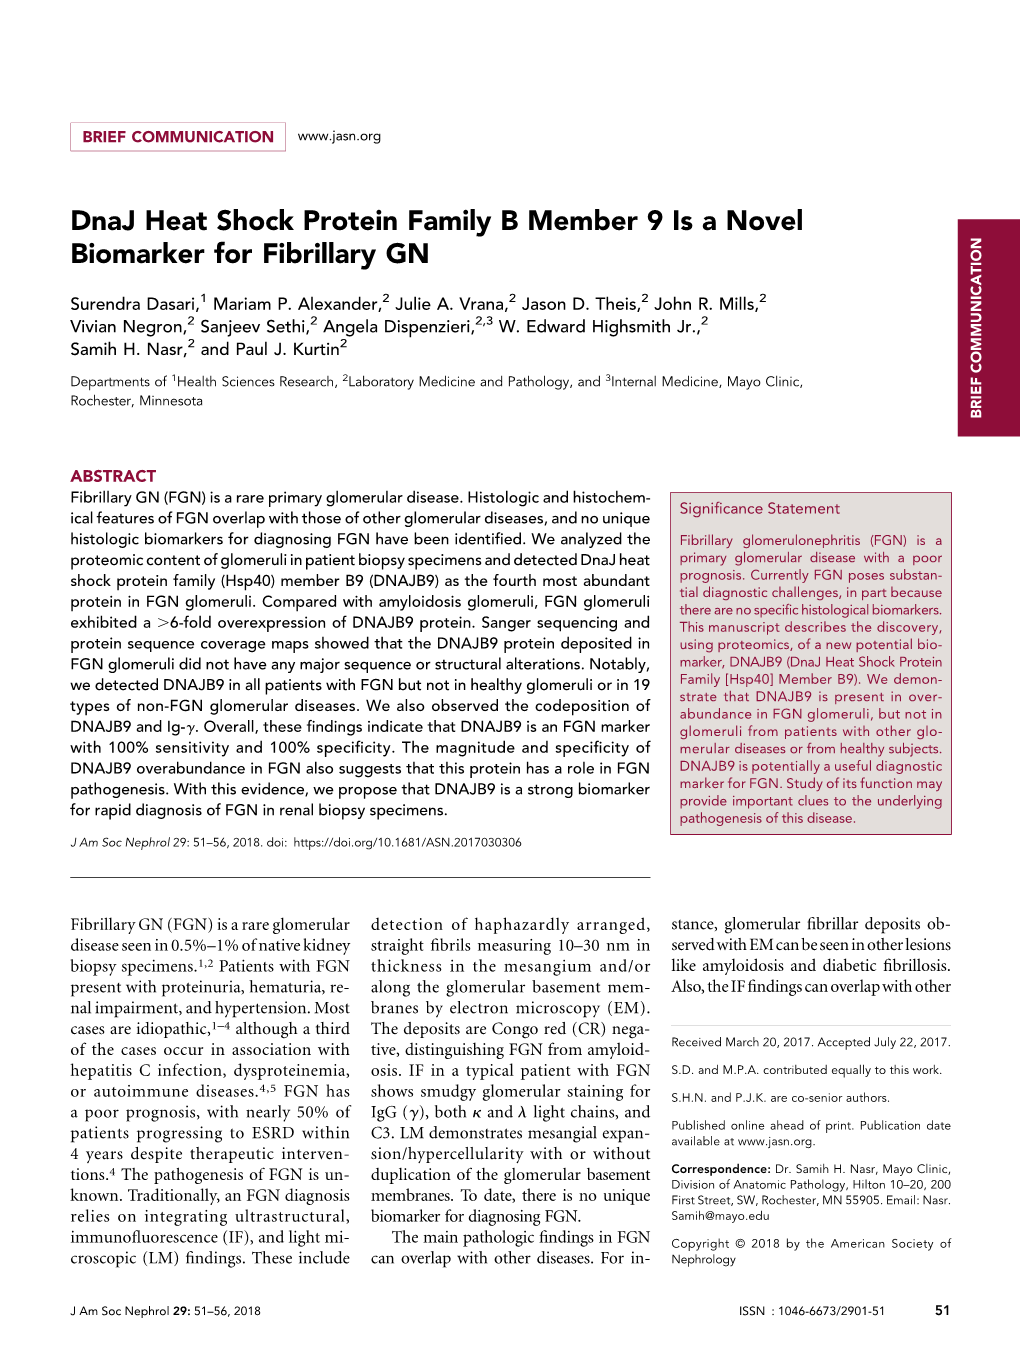 Dnaj Heat Shock Protein Family B Member 9 Is a Novel Biomarker for Fibrillary GN